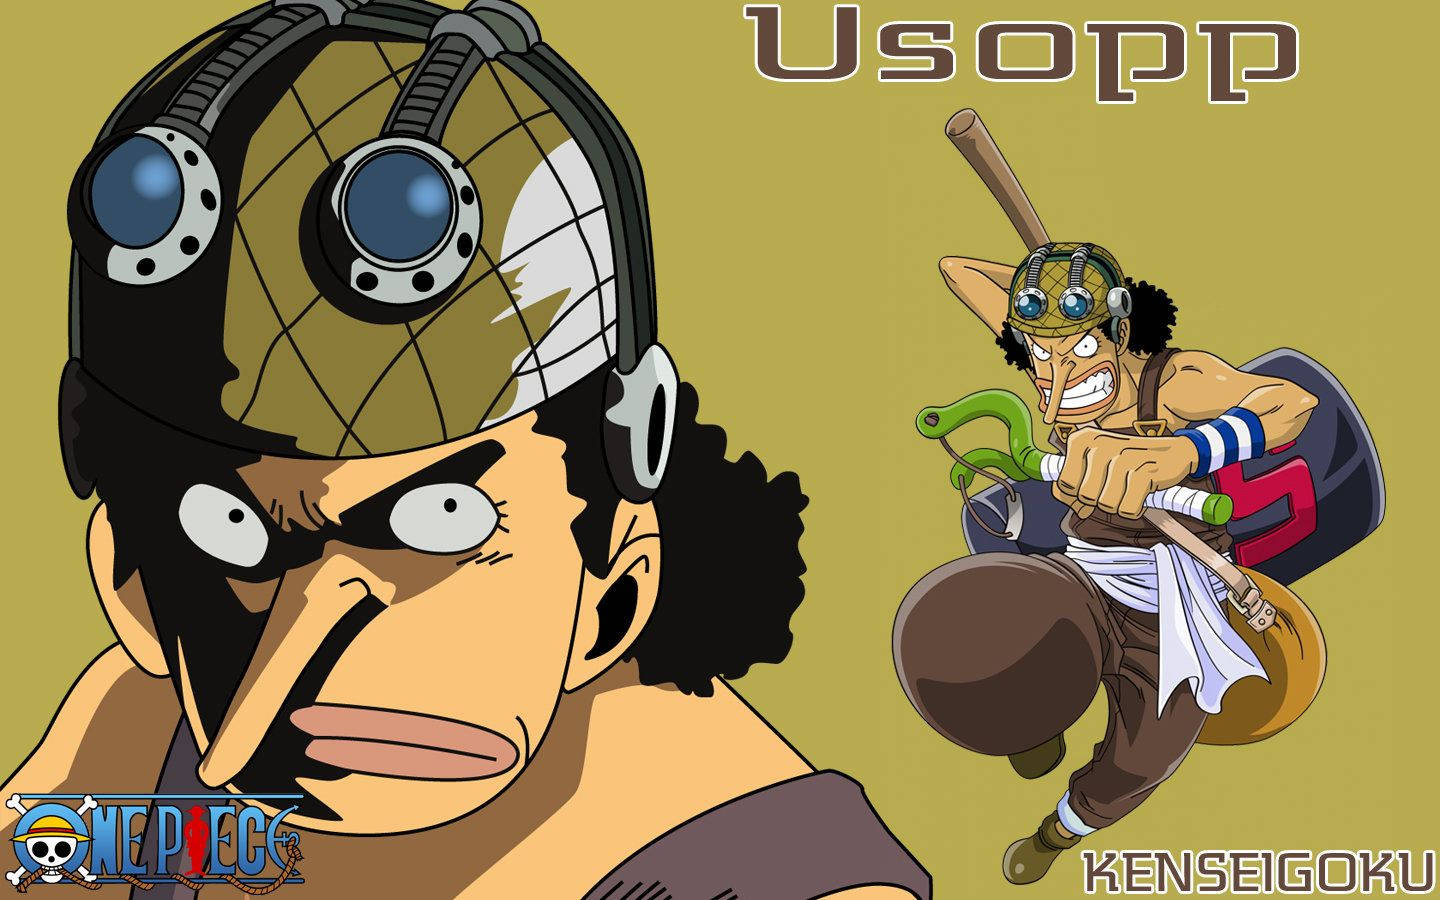 One Piece Usopp Bravest Warrior Background